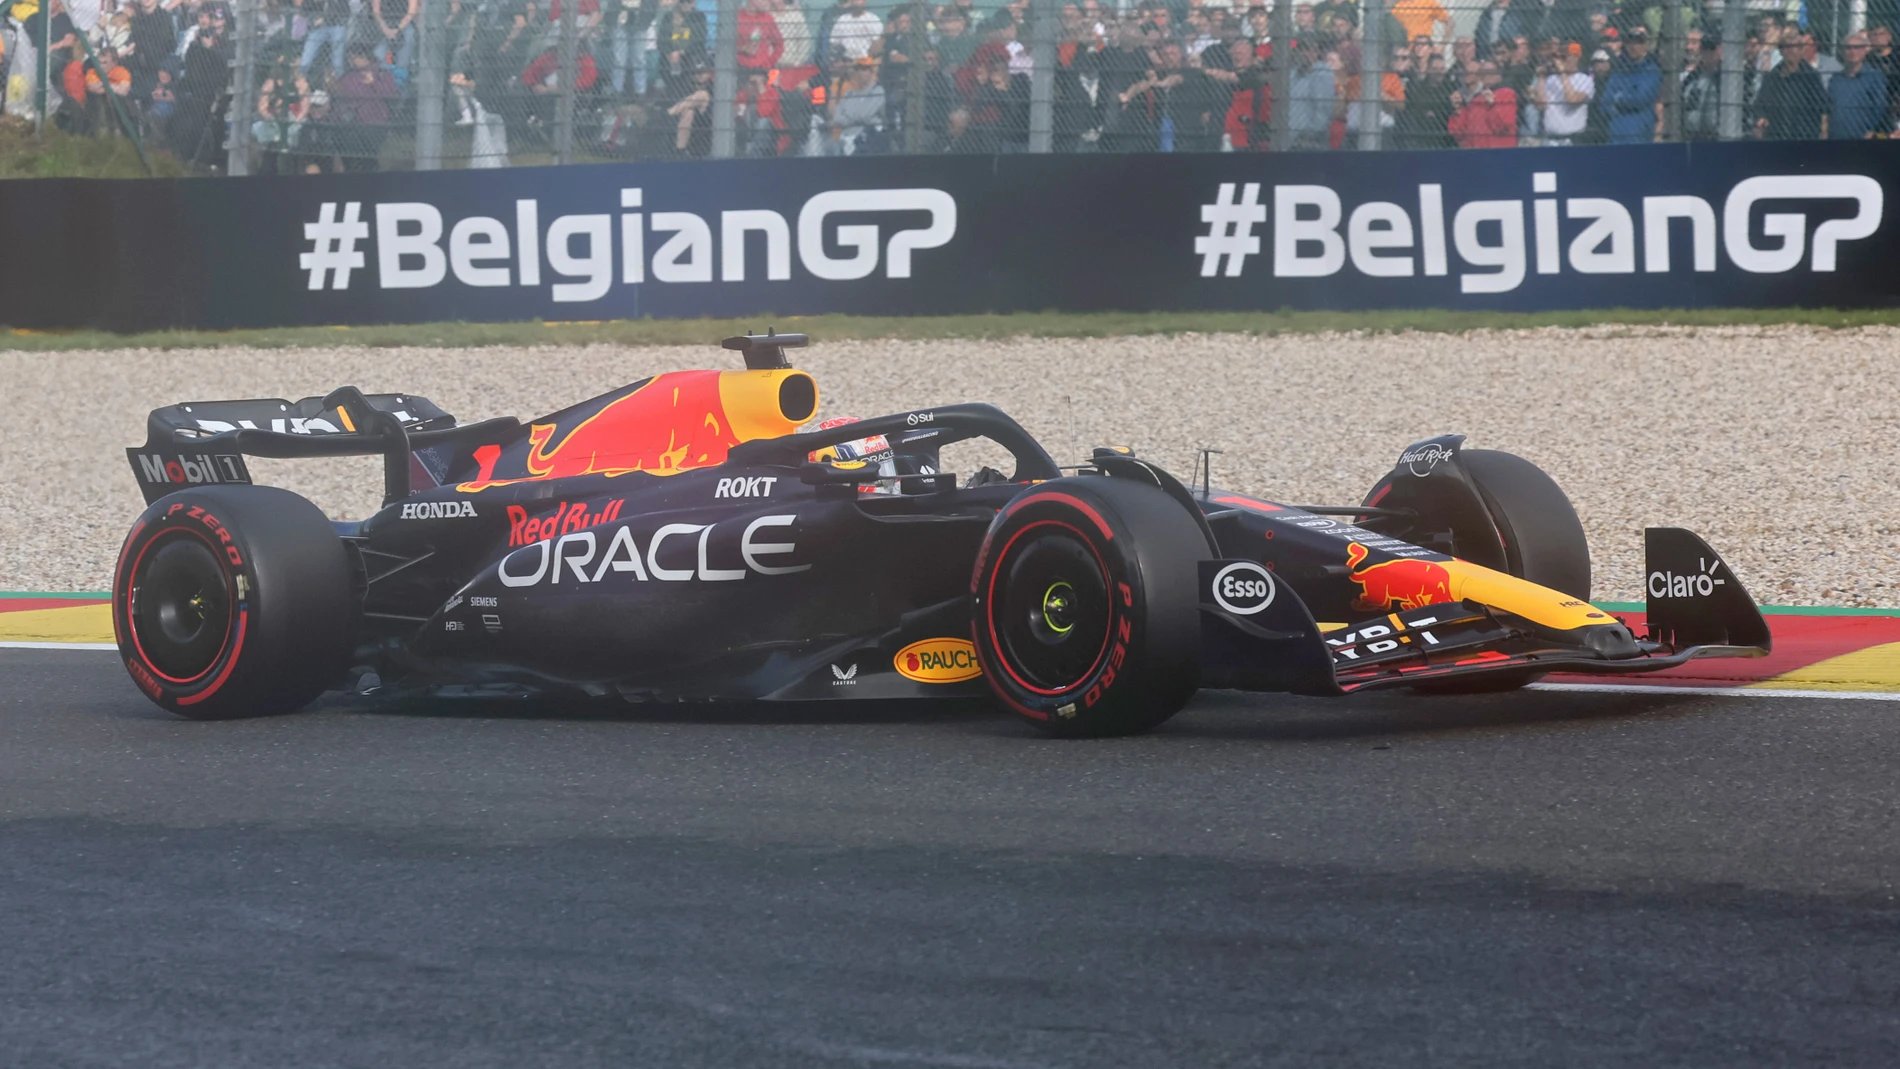 Fórmula 1/GP Bélgica.- Max Verstappen gana el loco Sprint de Spa tras el chaparrón